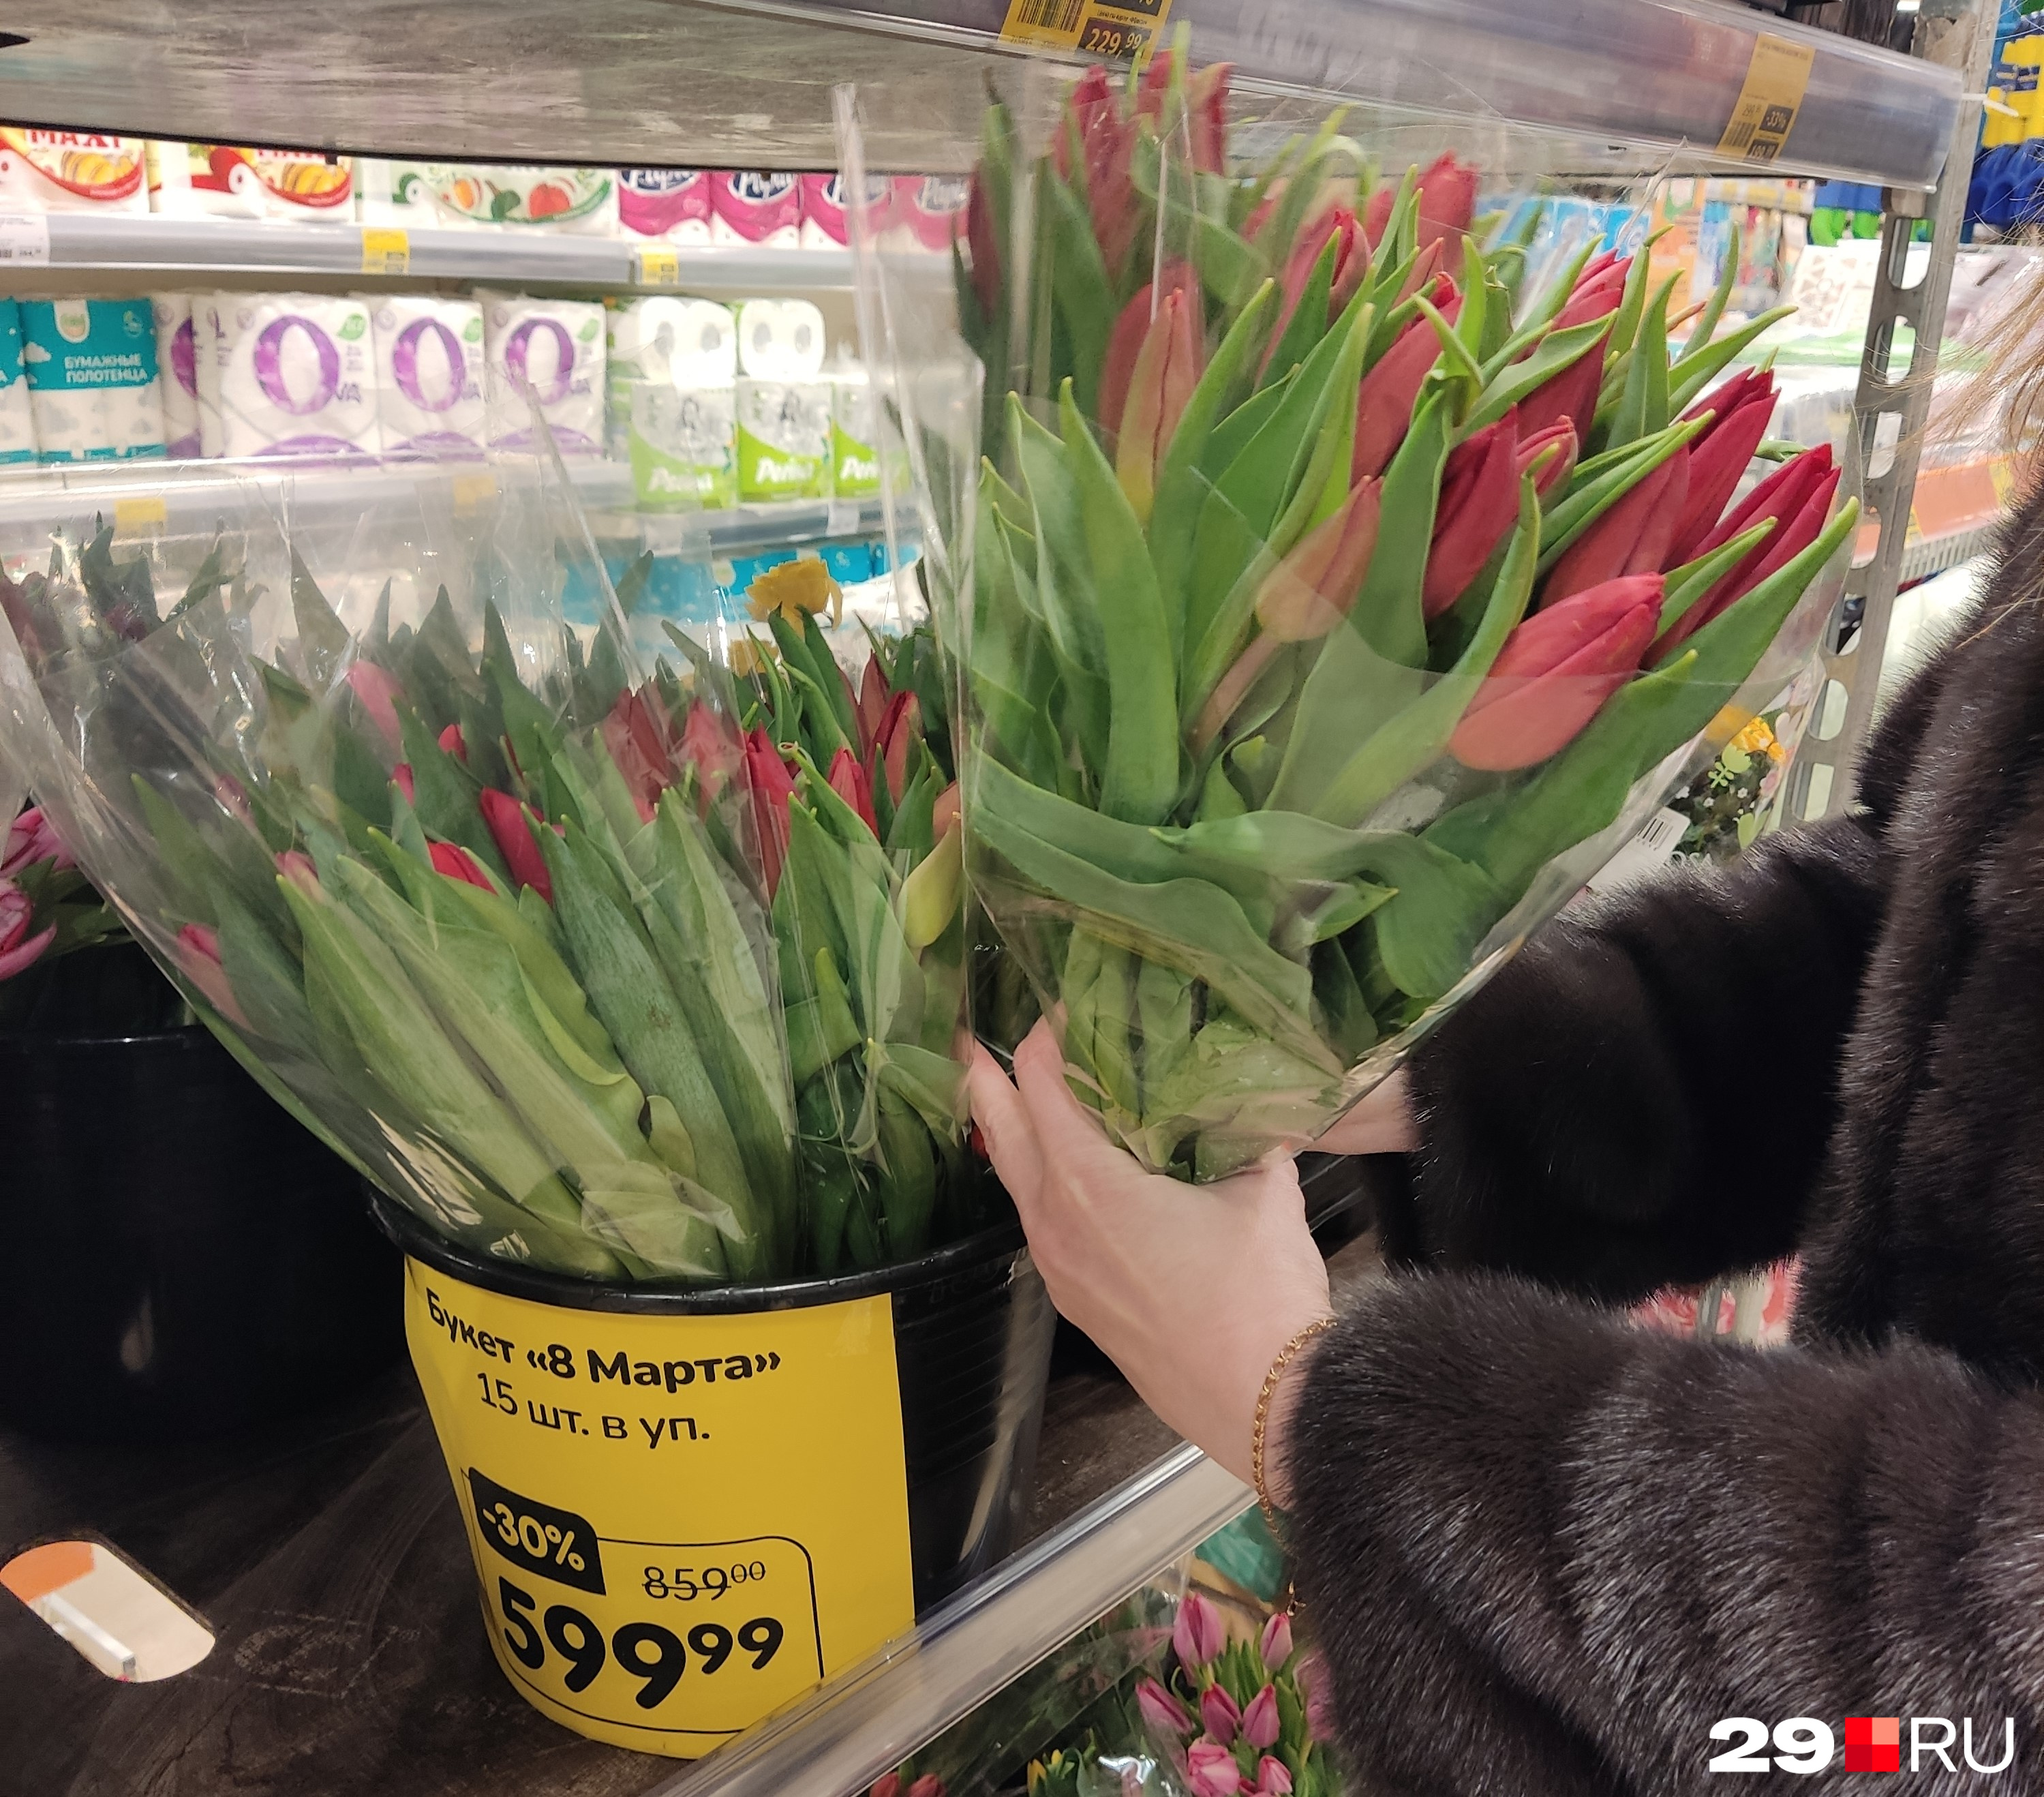 Есть здесь и традиционный стеллаж с тюльпанами — 15 штук продают за 599 рублей (это со скидкой в 30%)